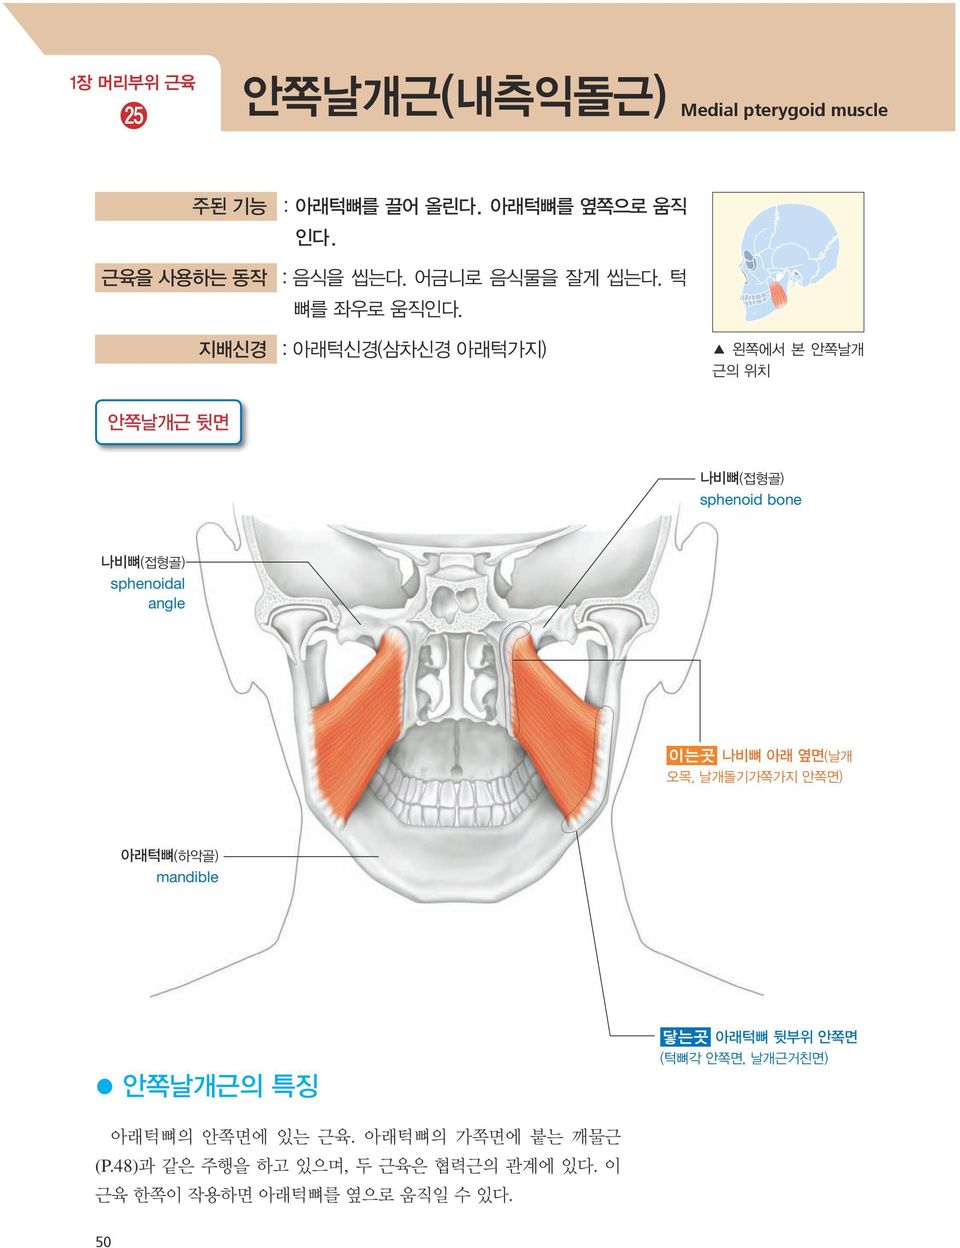 지배신경 : 아래턱신경(삼차신경 아래턱가지) 왼쪽에서 본 안쪽날개 근의 위치 안쪽날개근 뒷면 나비뼈(접형골) sphenoid bone 나비뼈(접형골) sphenoidal angle 이는곳